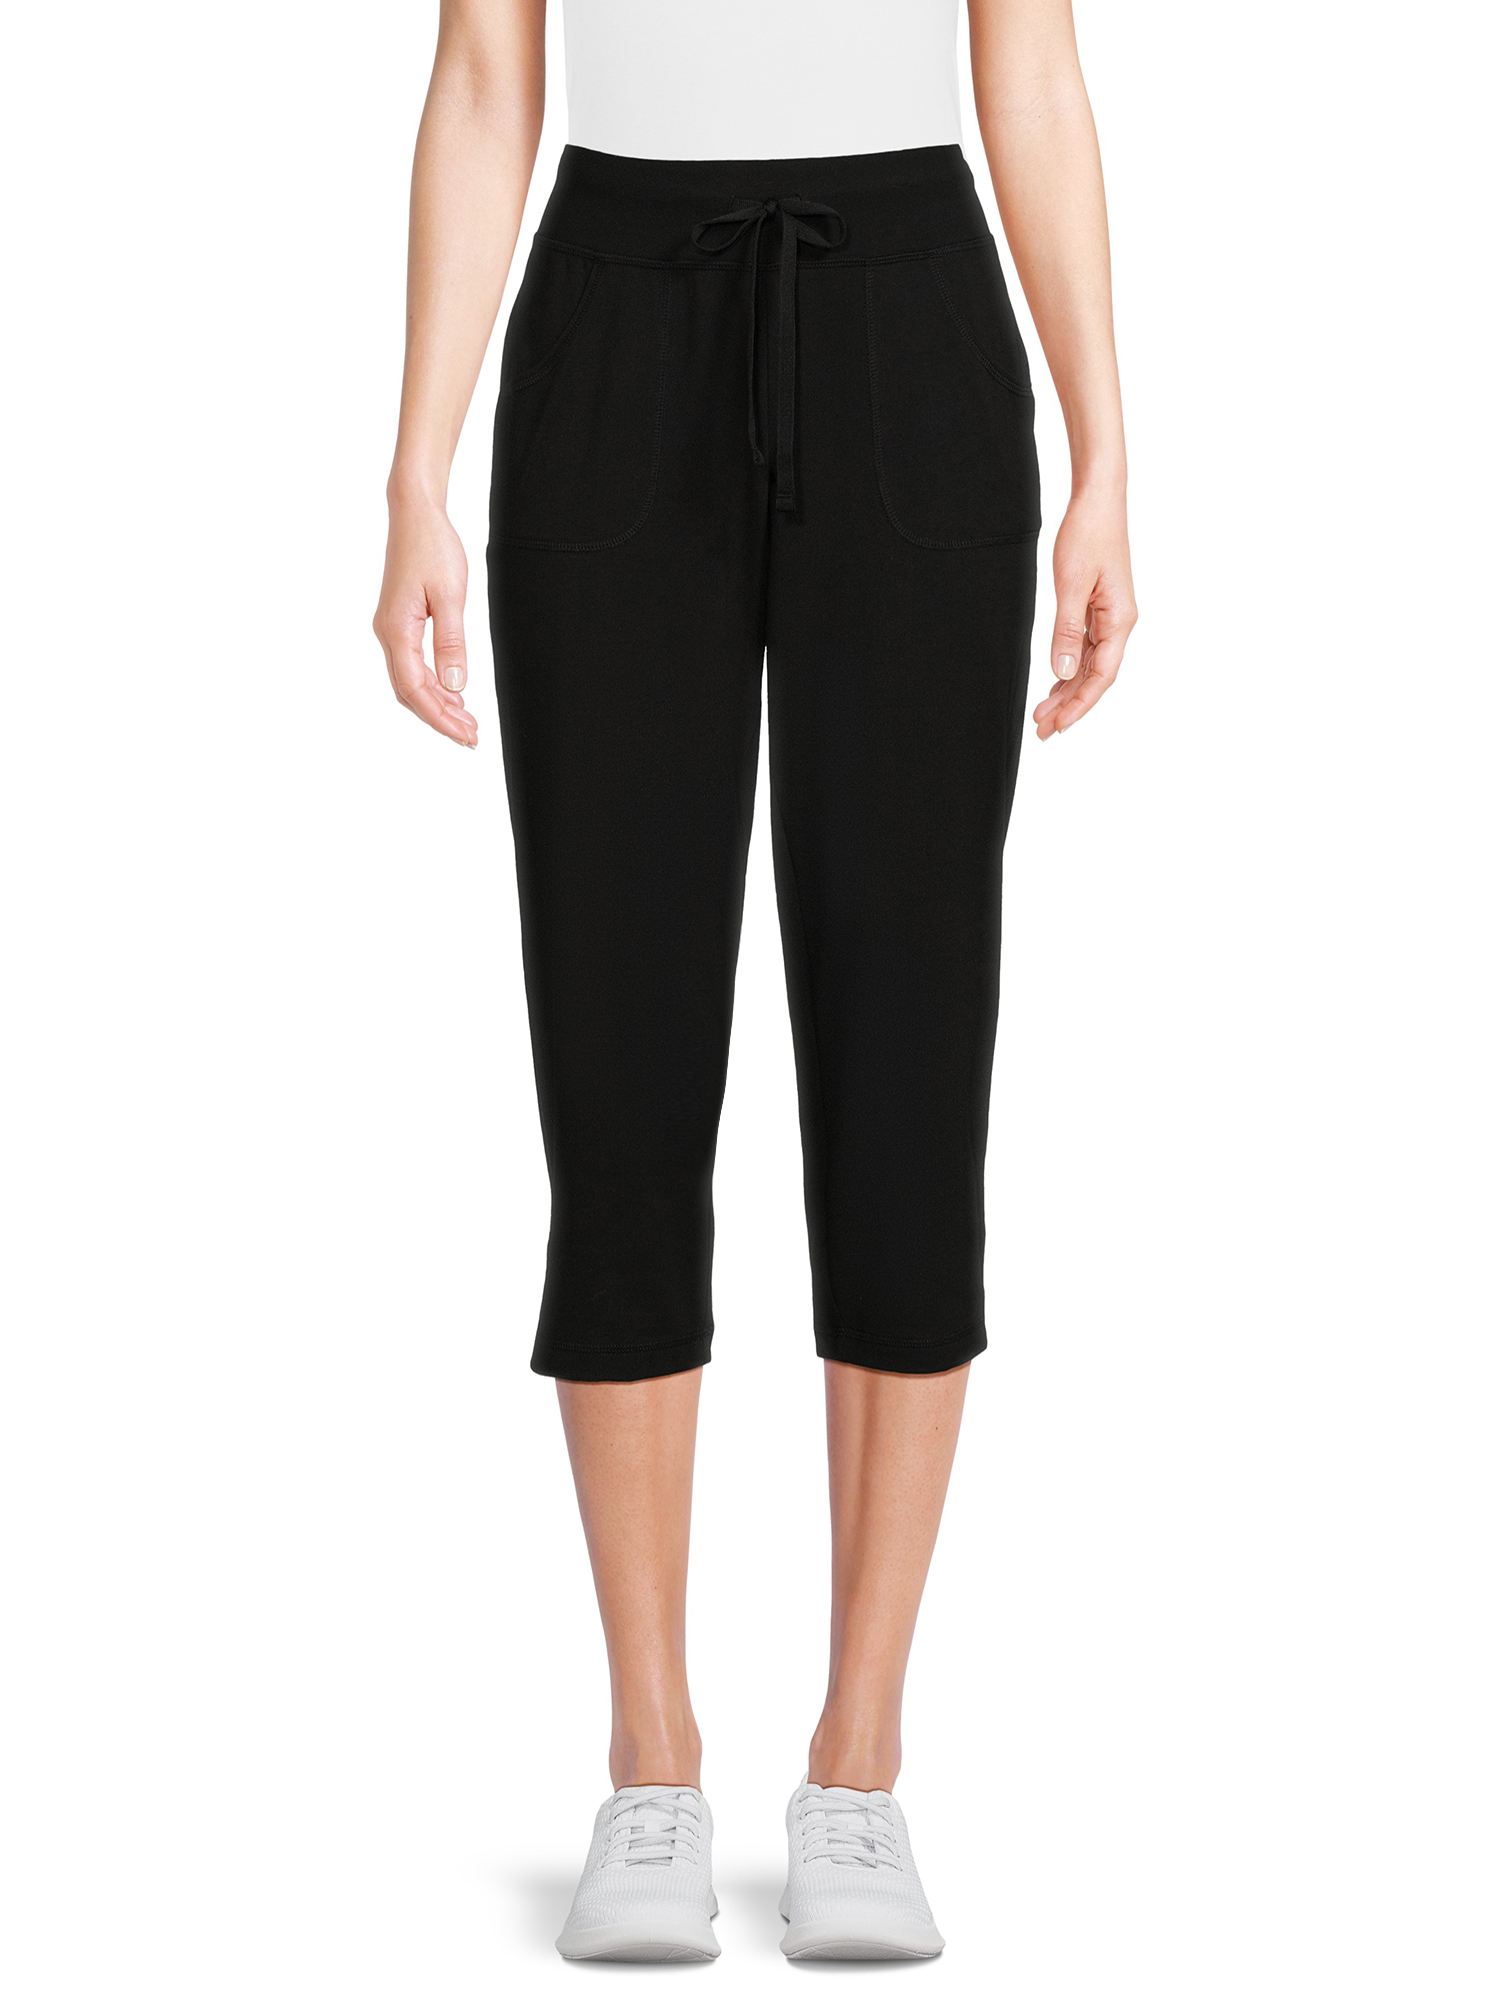 Athletic Works Women's Knit Capri Pants with Pockets, Sizes XS-XXXL ...